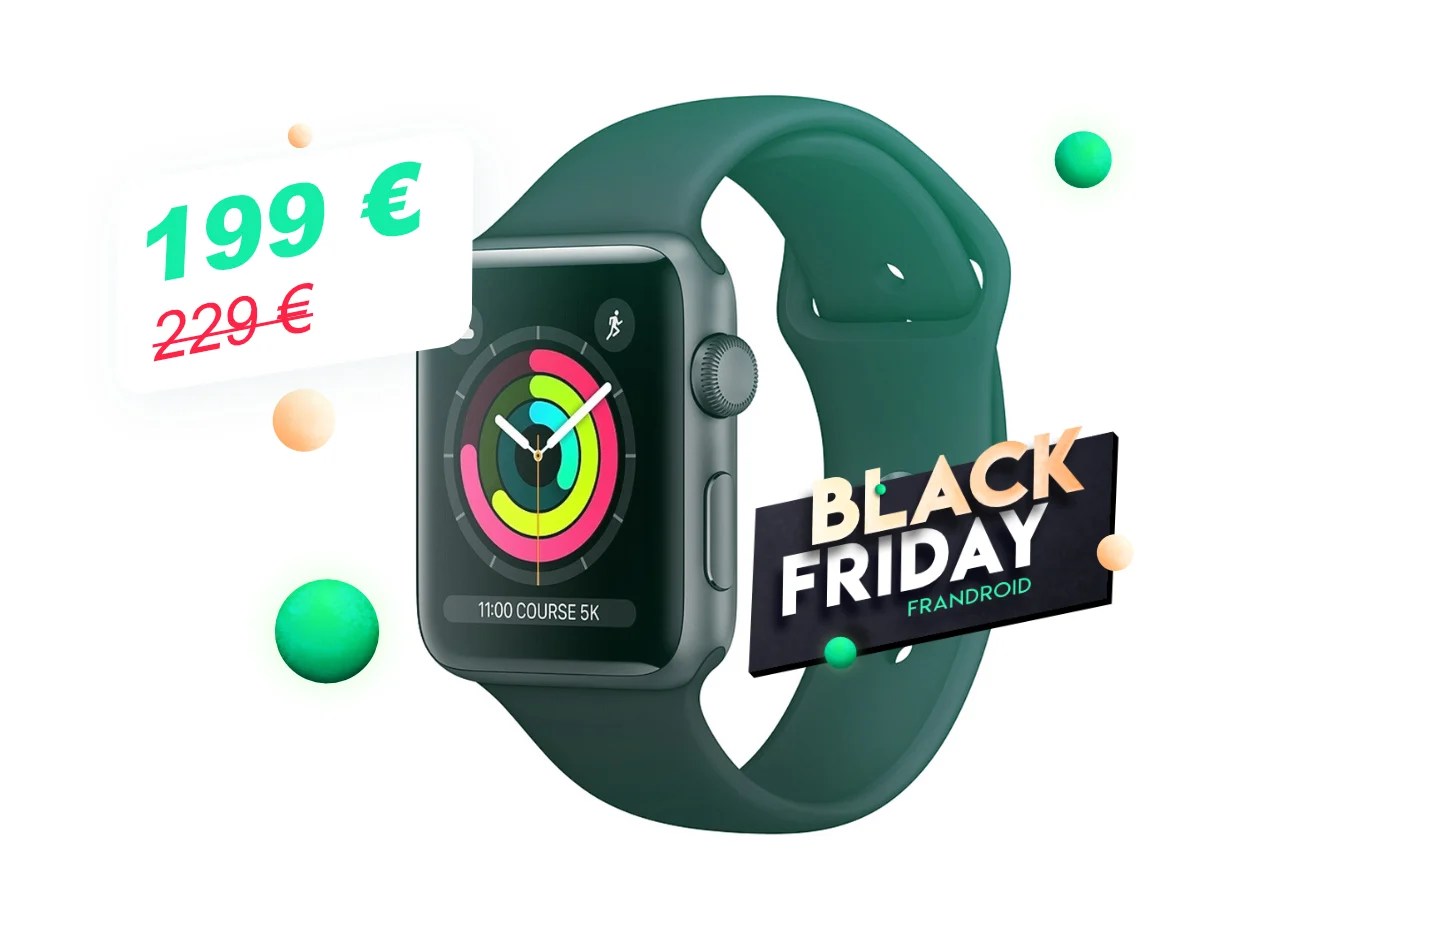 À moins de 200 euros, c’est le moment de craquer pour l’Apple Watch Series 3